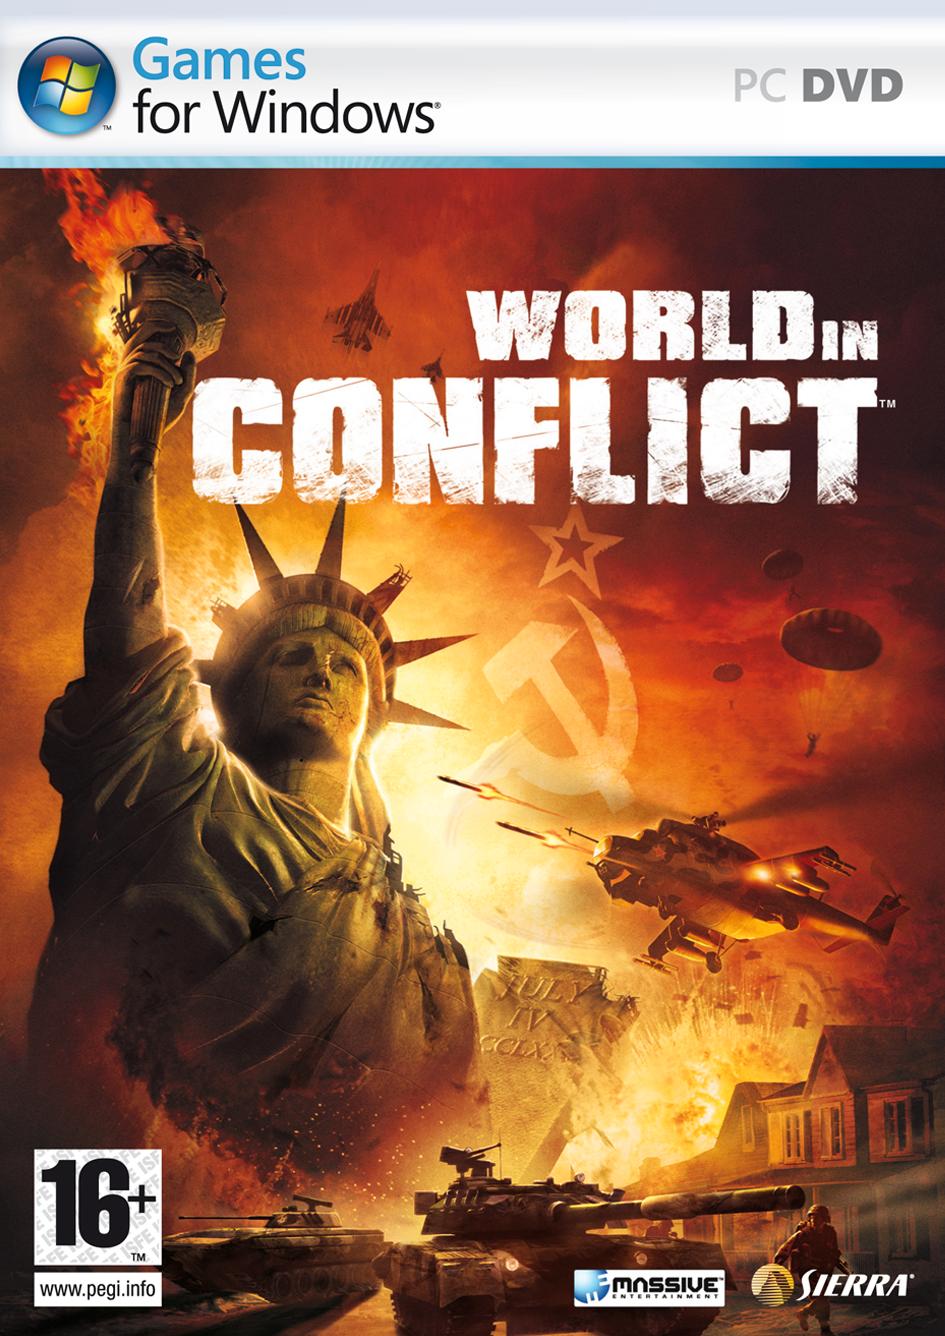 World in Conflict
Klikk for mer informasjon om spillet